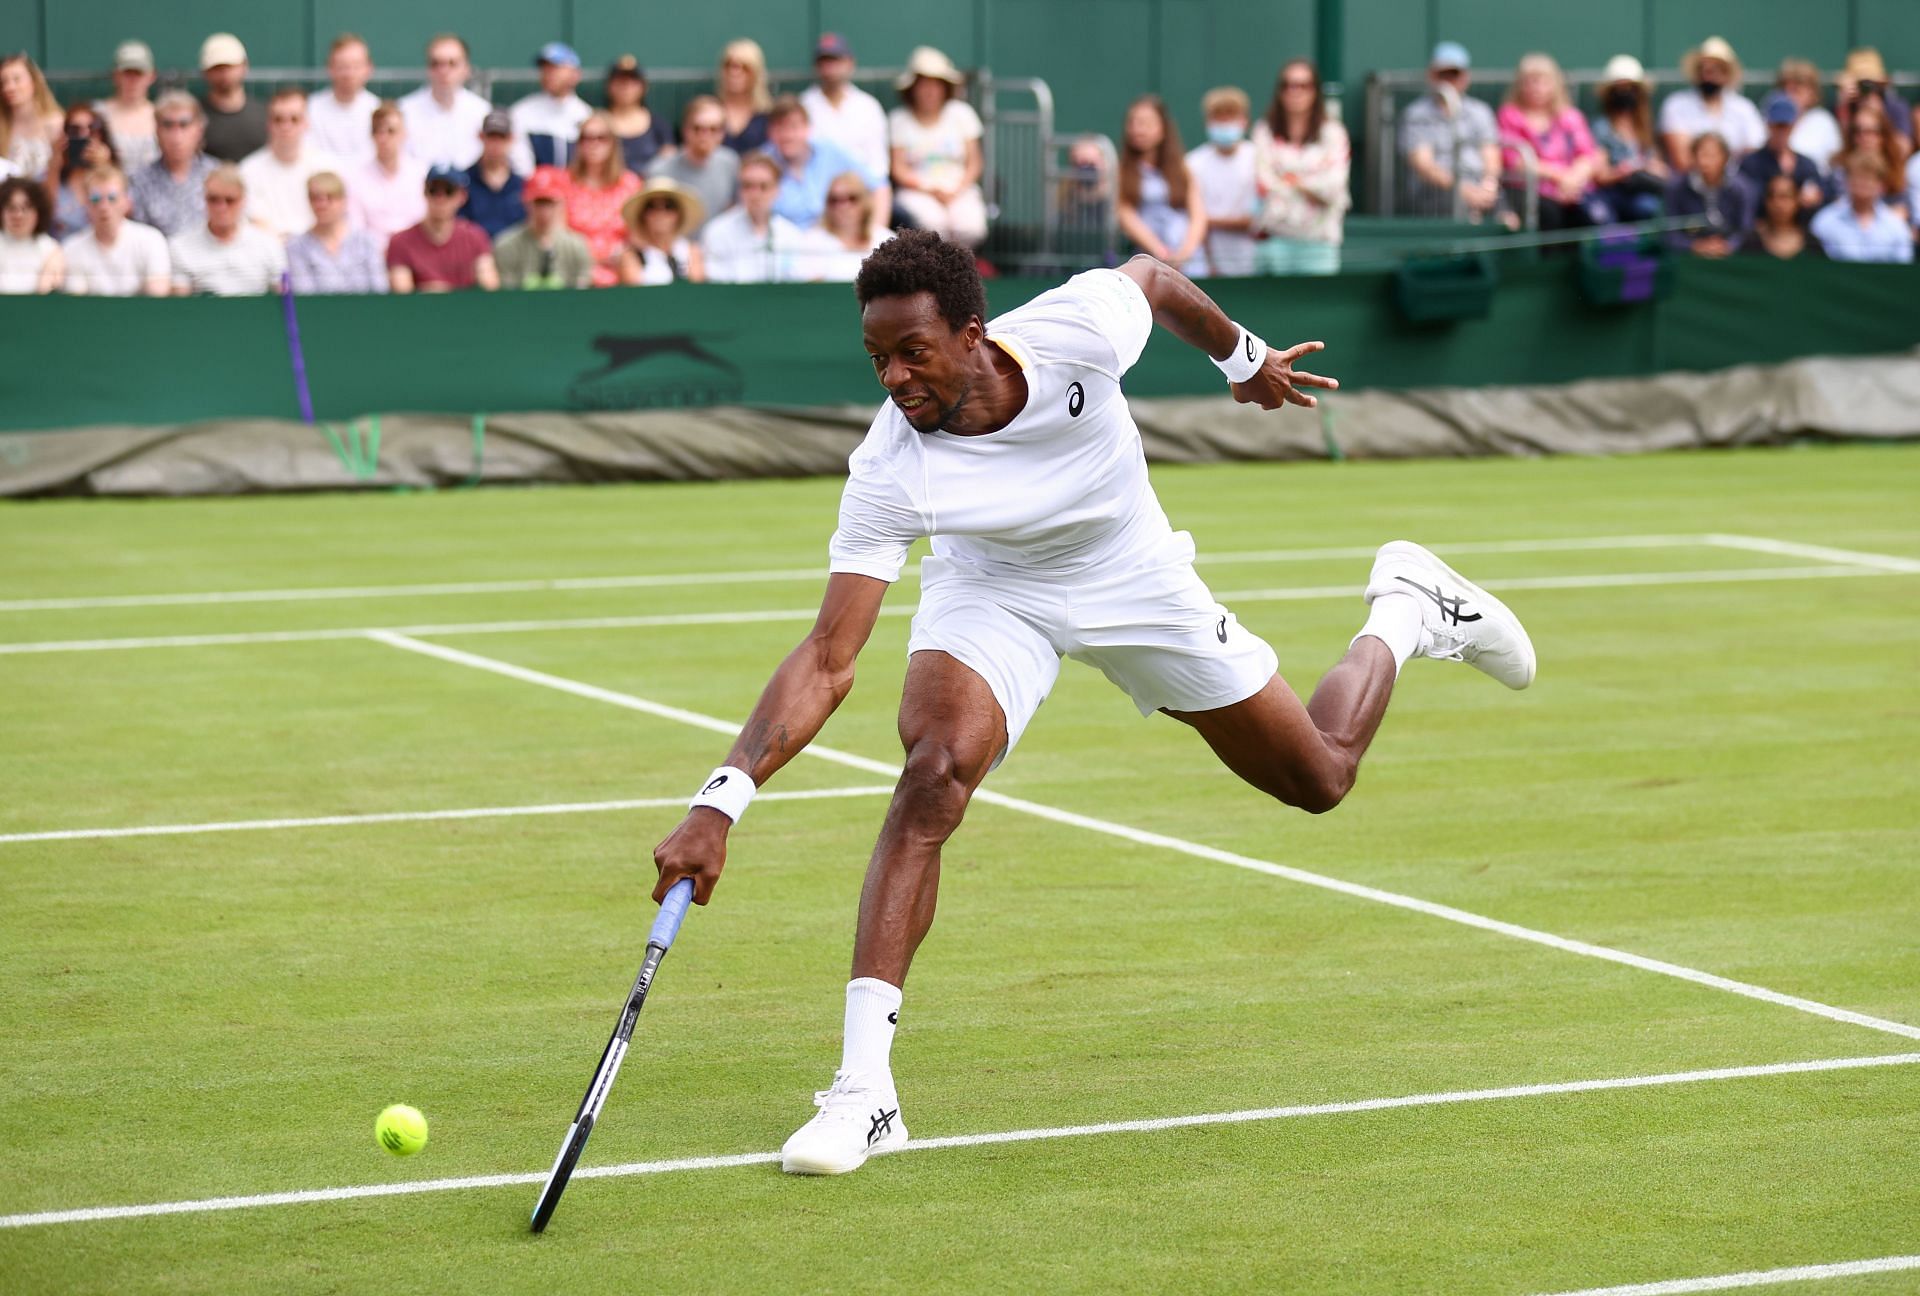 Gael Monfils attempts to reach a ball at Wimbledon